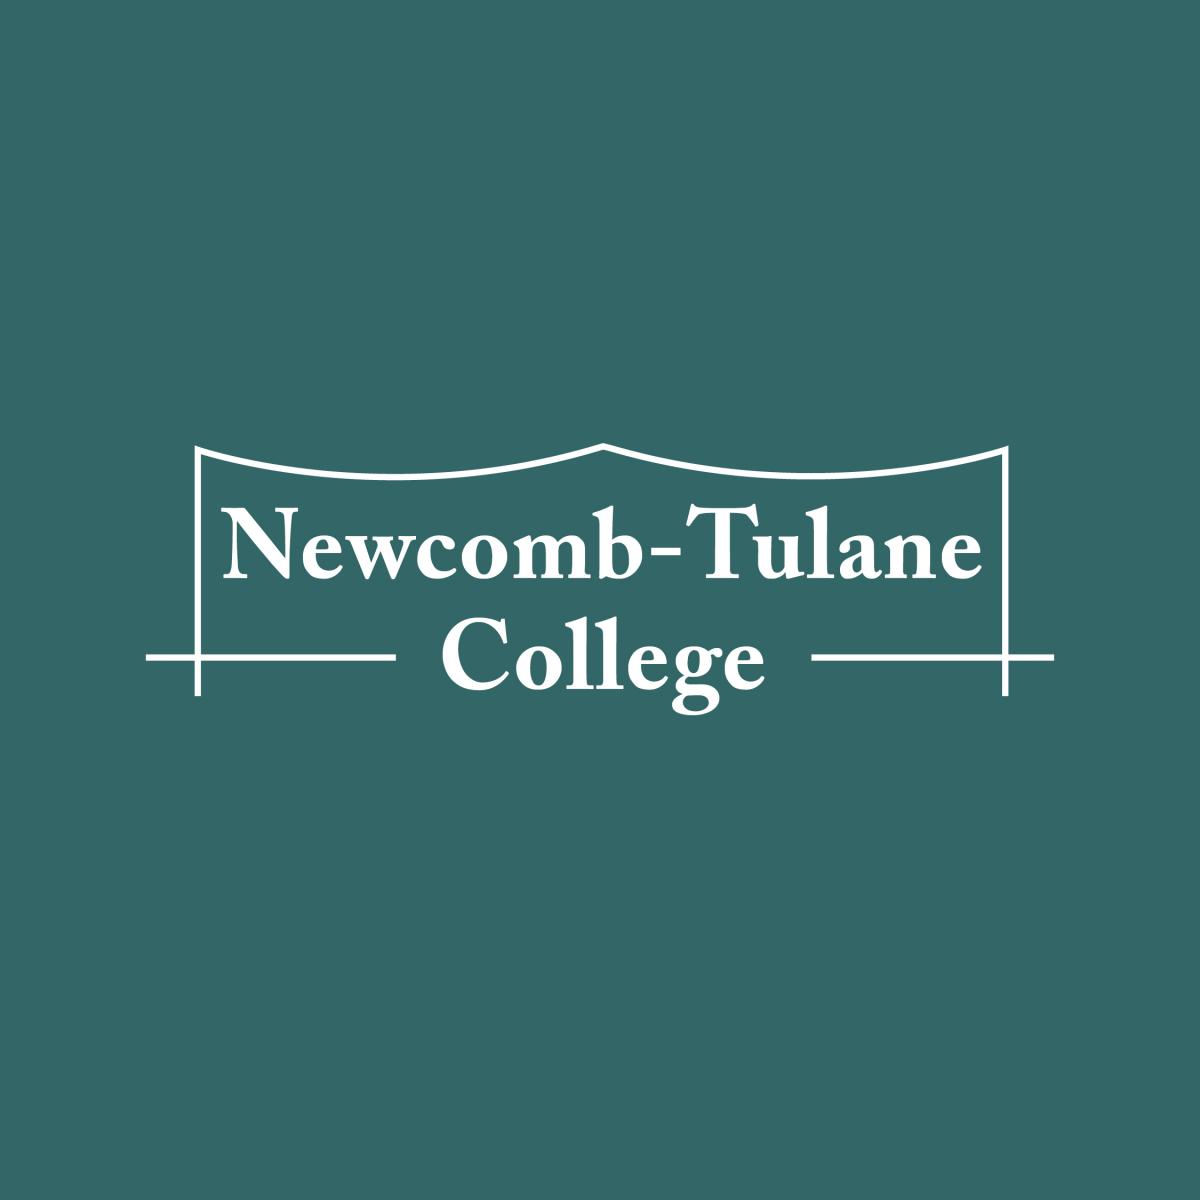 NTC Logo on Tulane Green Background